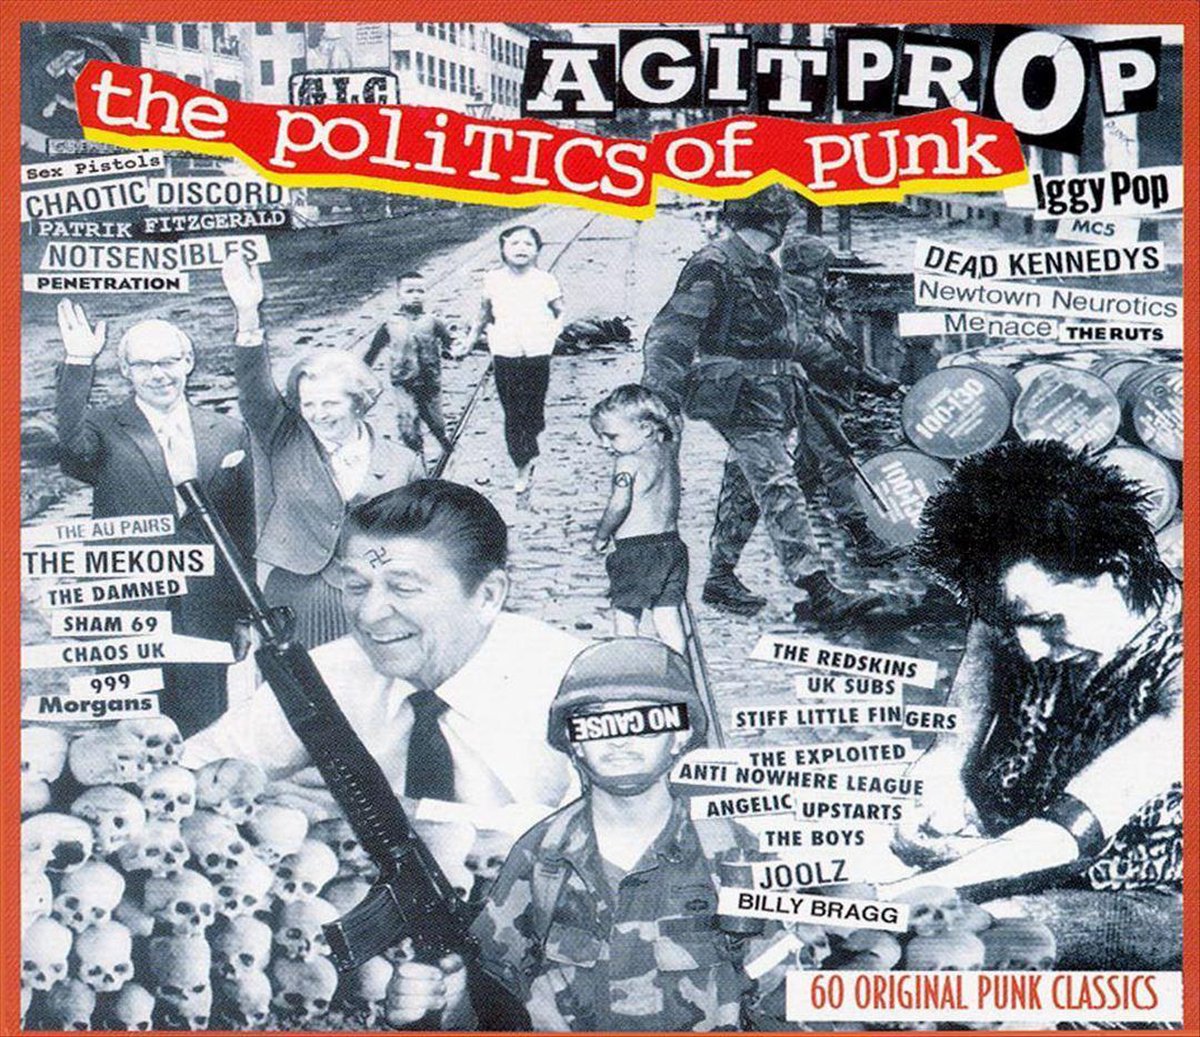 Agitprop: The Politics of Punk - various artists